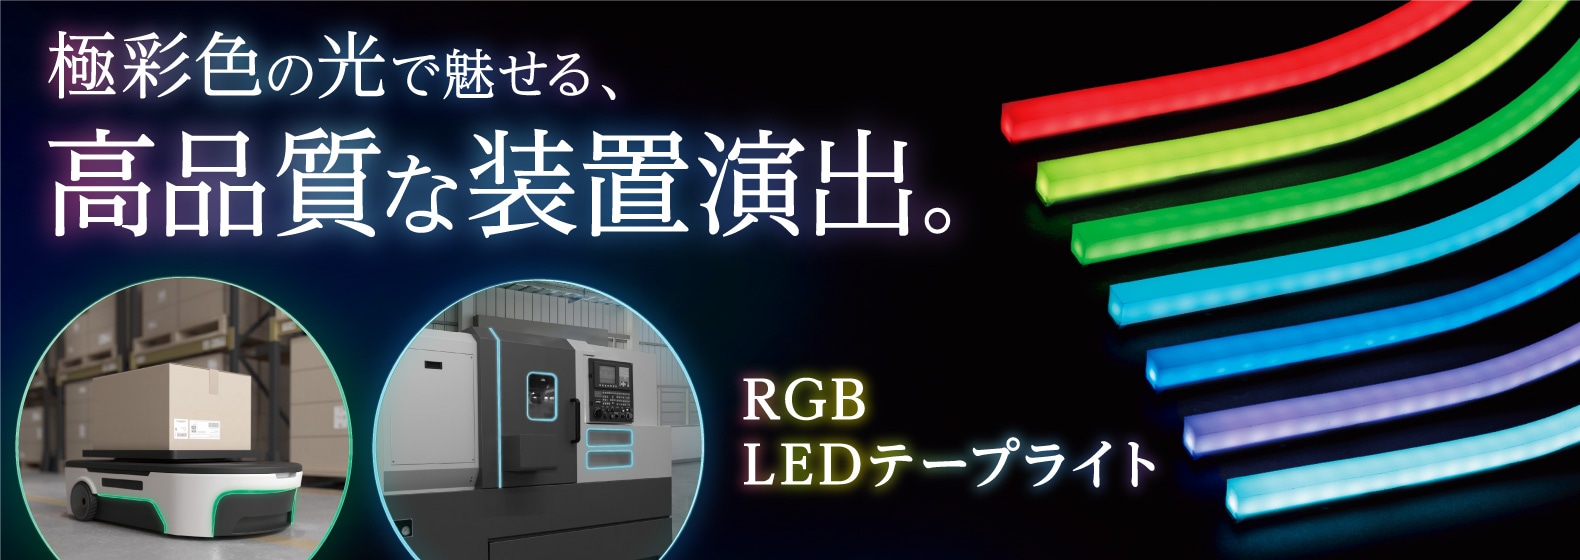 極彩色の光で魅せる、高品質な装置演出。RGB LEDテープライト